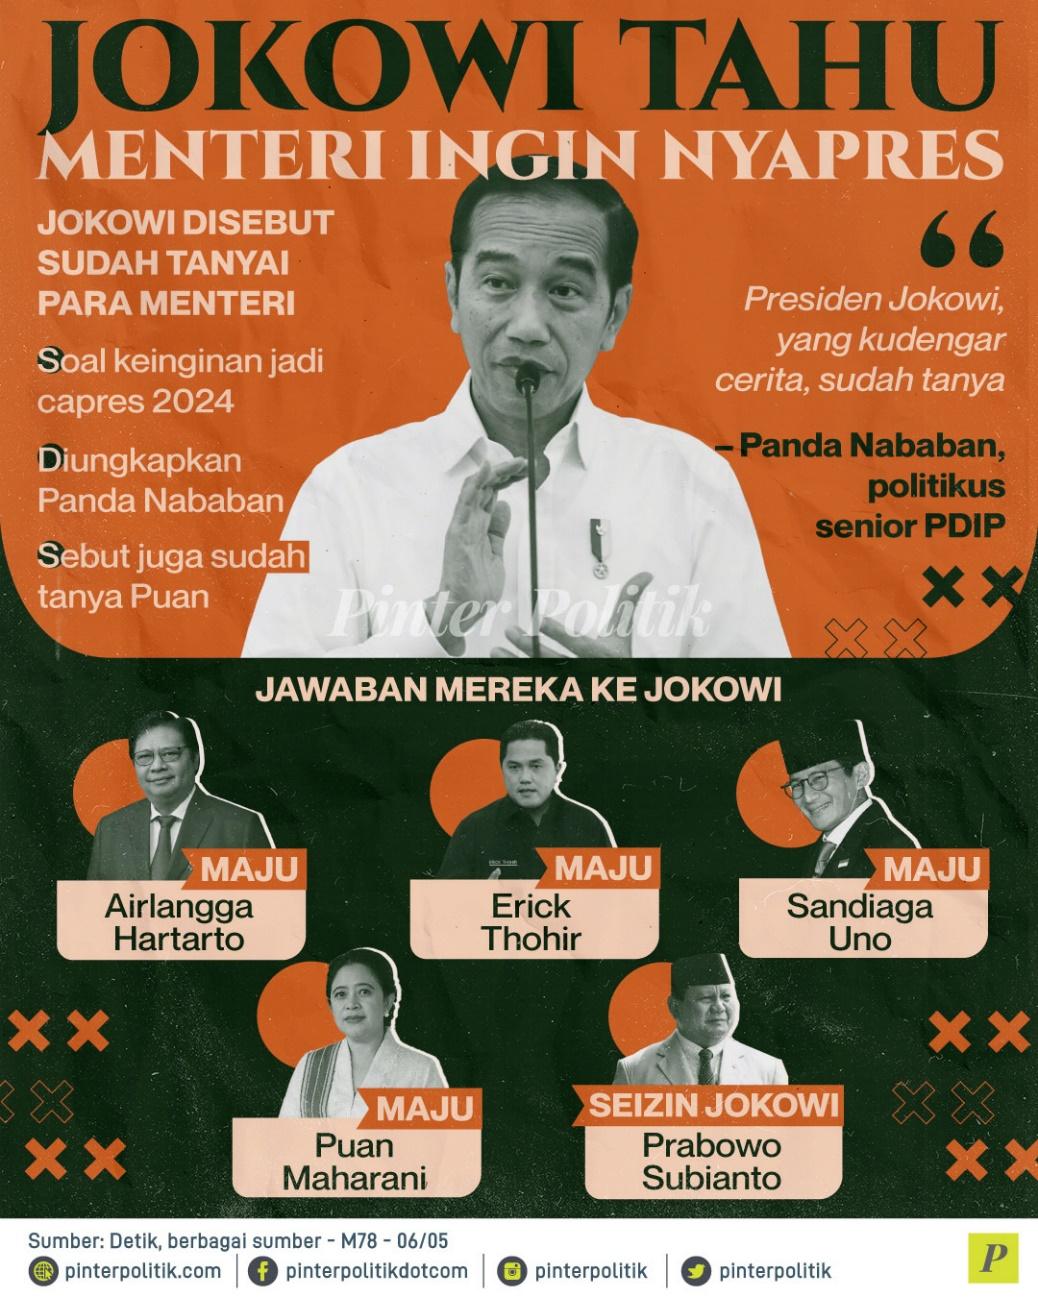 Jokowi Tahu Menteri Ingin Nyapres